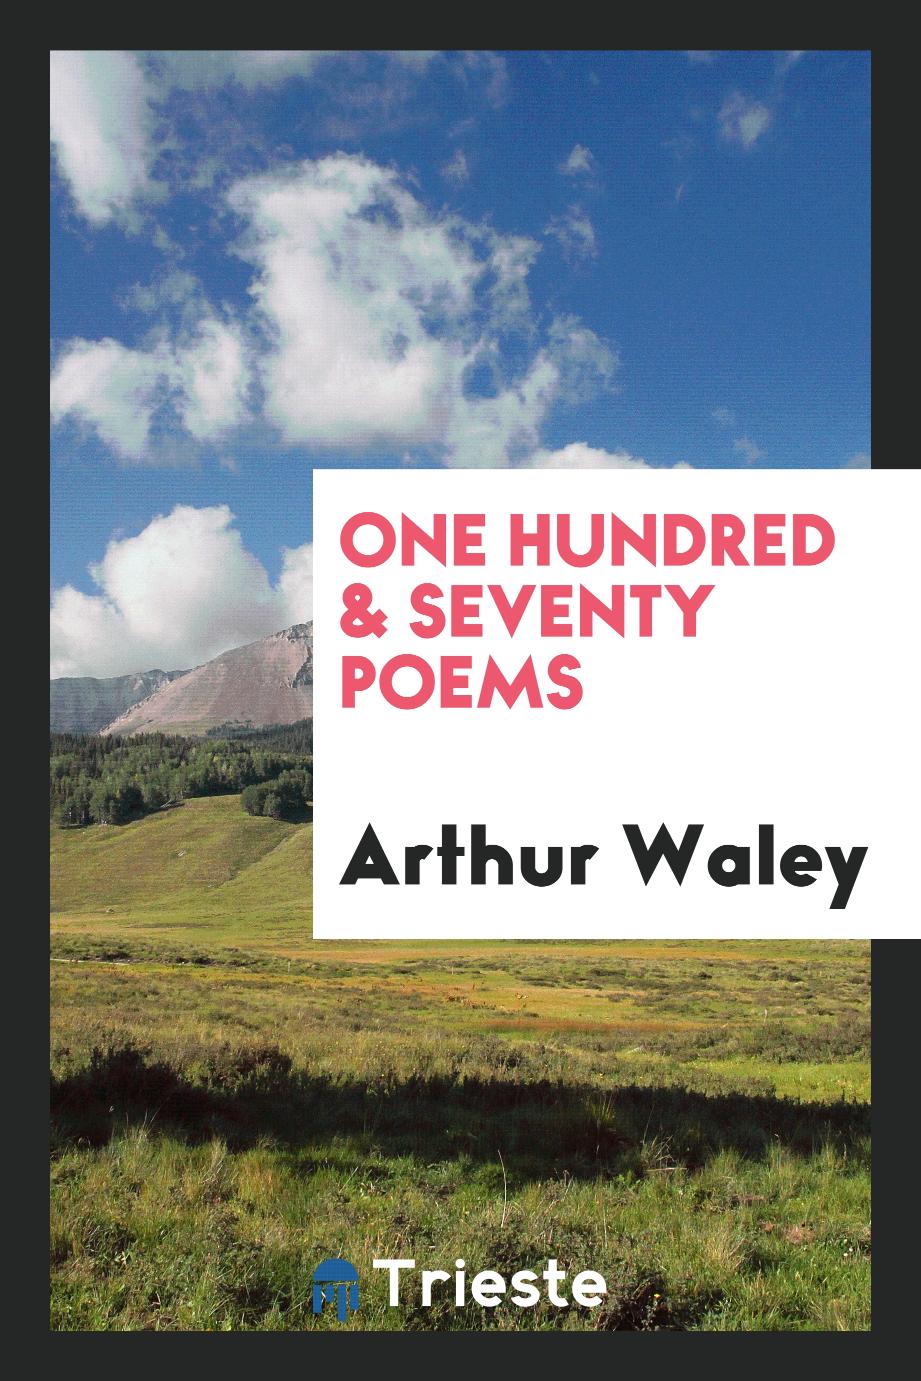 One hundred & seventy poems